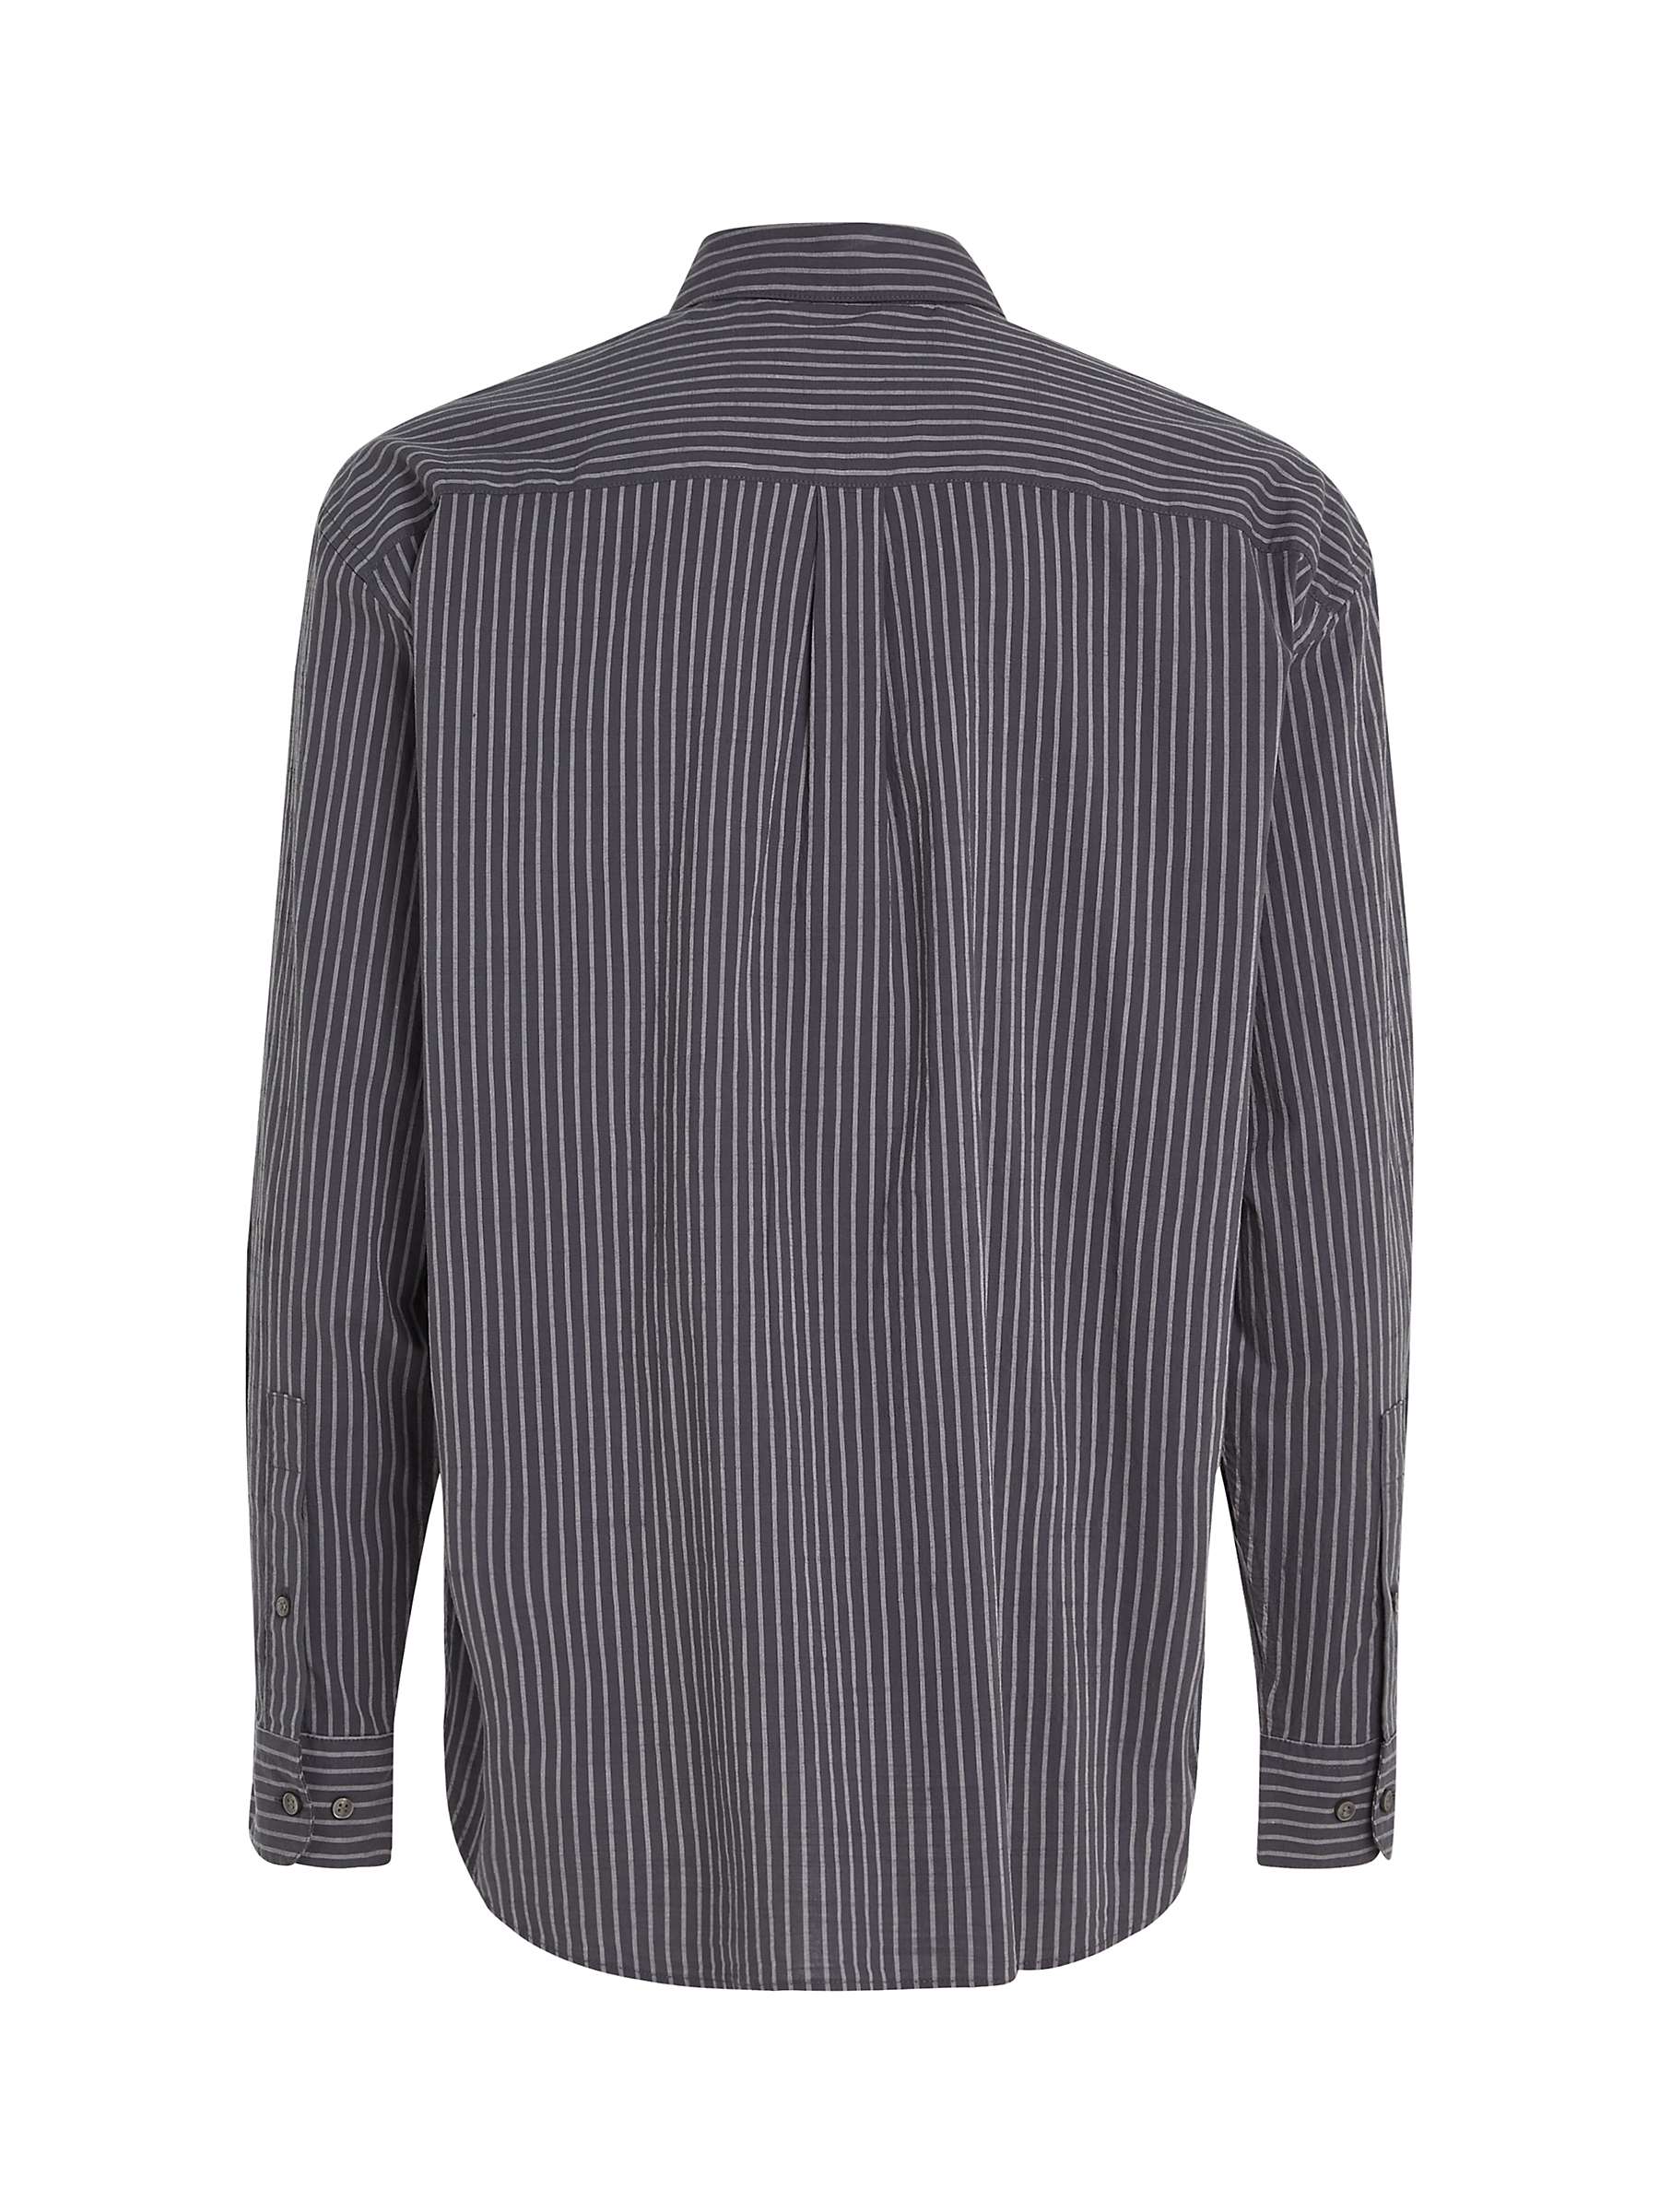 Calvin Klein Stretch Stripe Long Sleeve Shirt, Grey at John Lewis ...